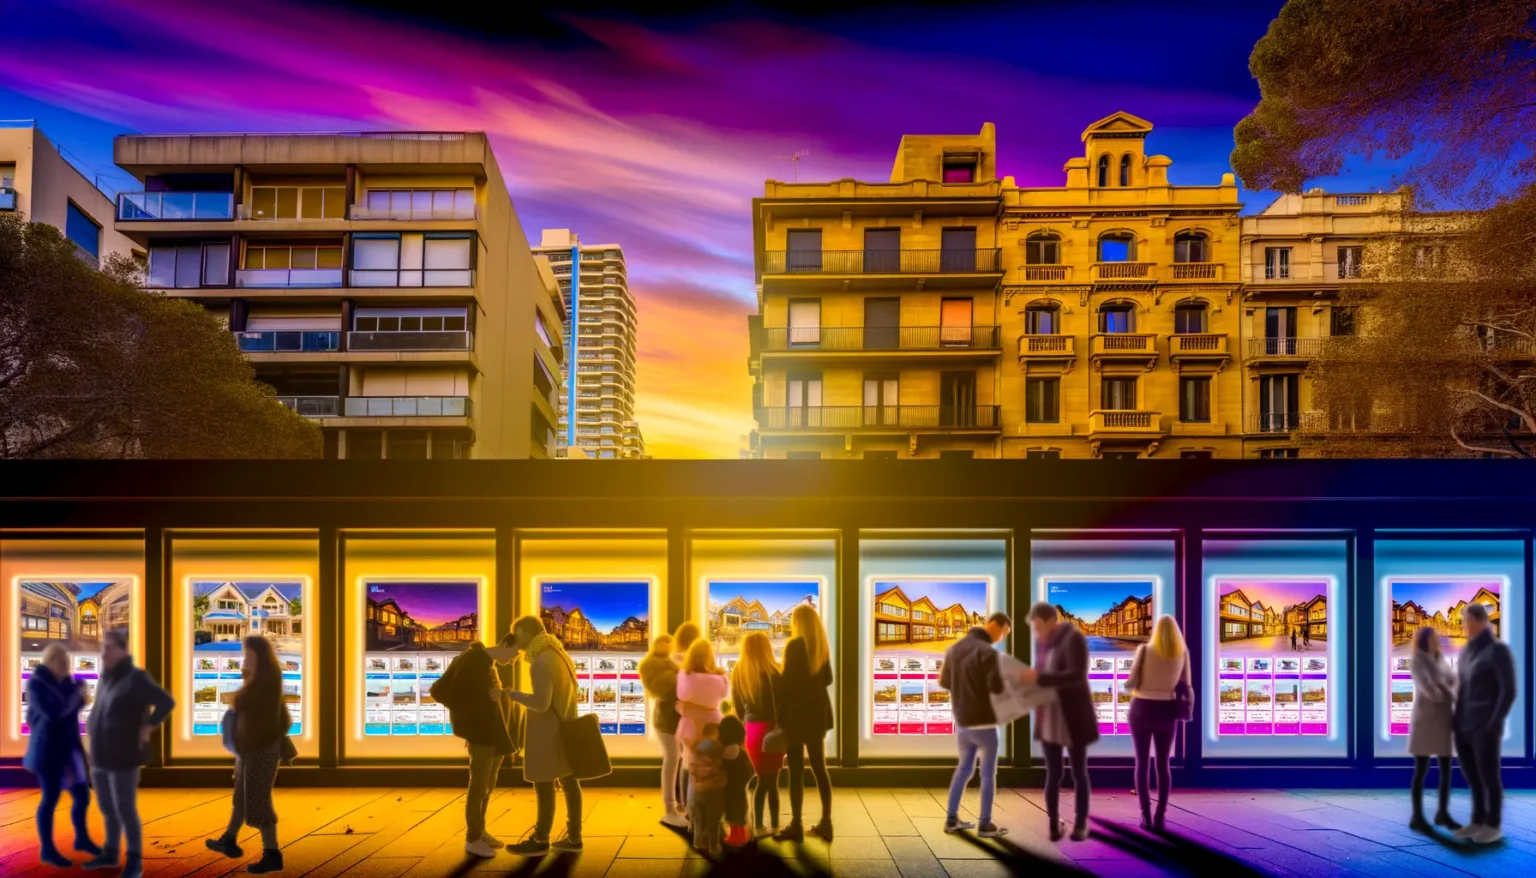 Eine belebte Straße bei Einbruch der Dämmerung, Menschen betrachten Immobilienanzeigen in einem Maklerbüro mit leuchtenden Auslagenscheiben. Im Hintergrund zeichnet sich die Skyline von Stadthäusern gegen einen dramatischen Himmel mit lebhaften lila und orange Tönen ab.